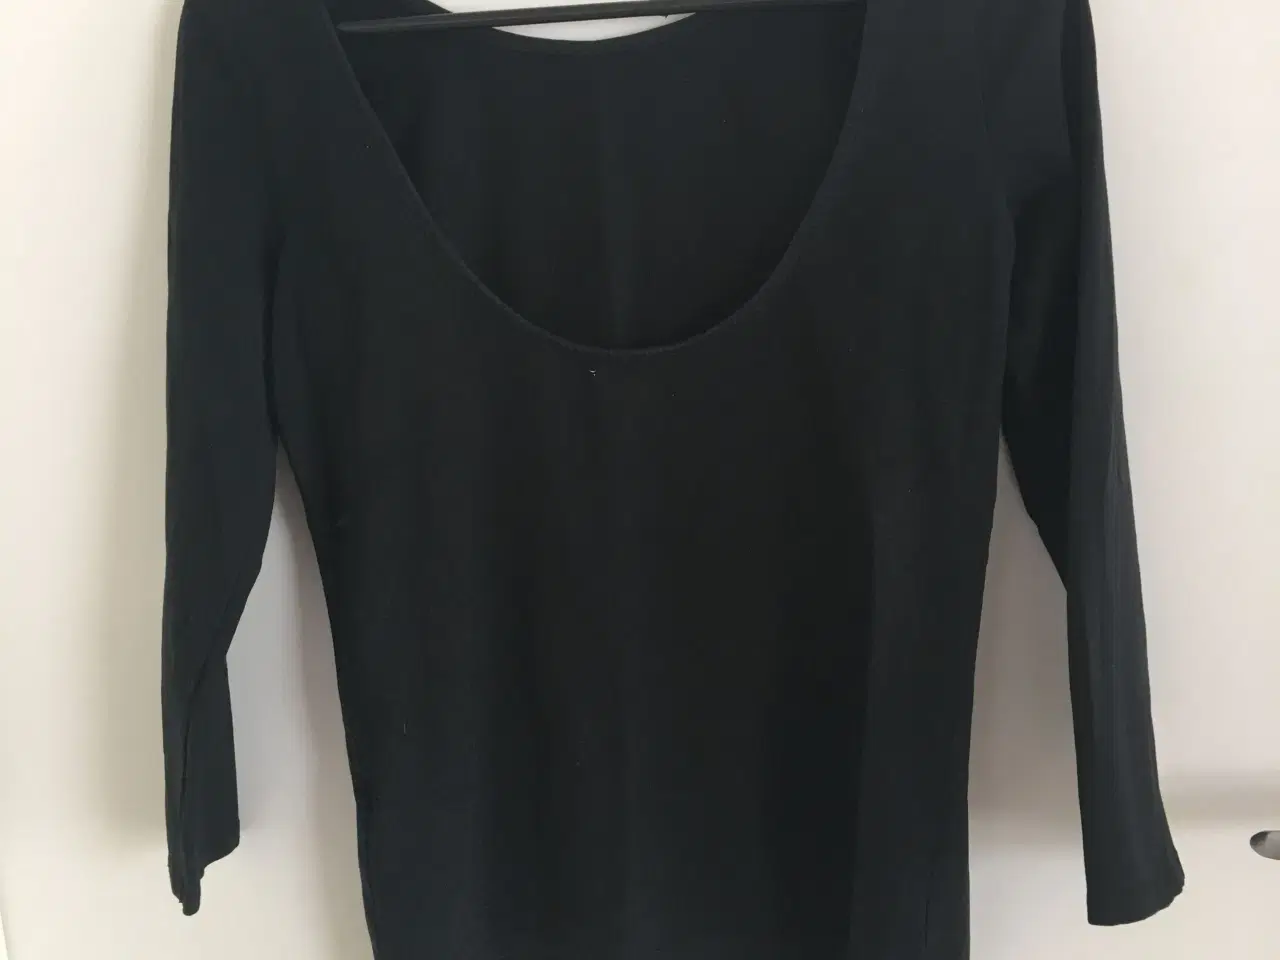 Billede 2 - Zara bluse str. M med bar ryg